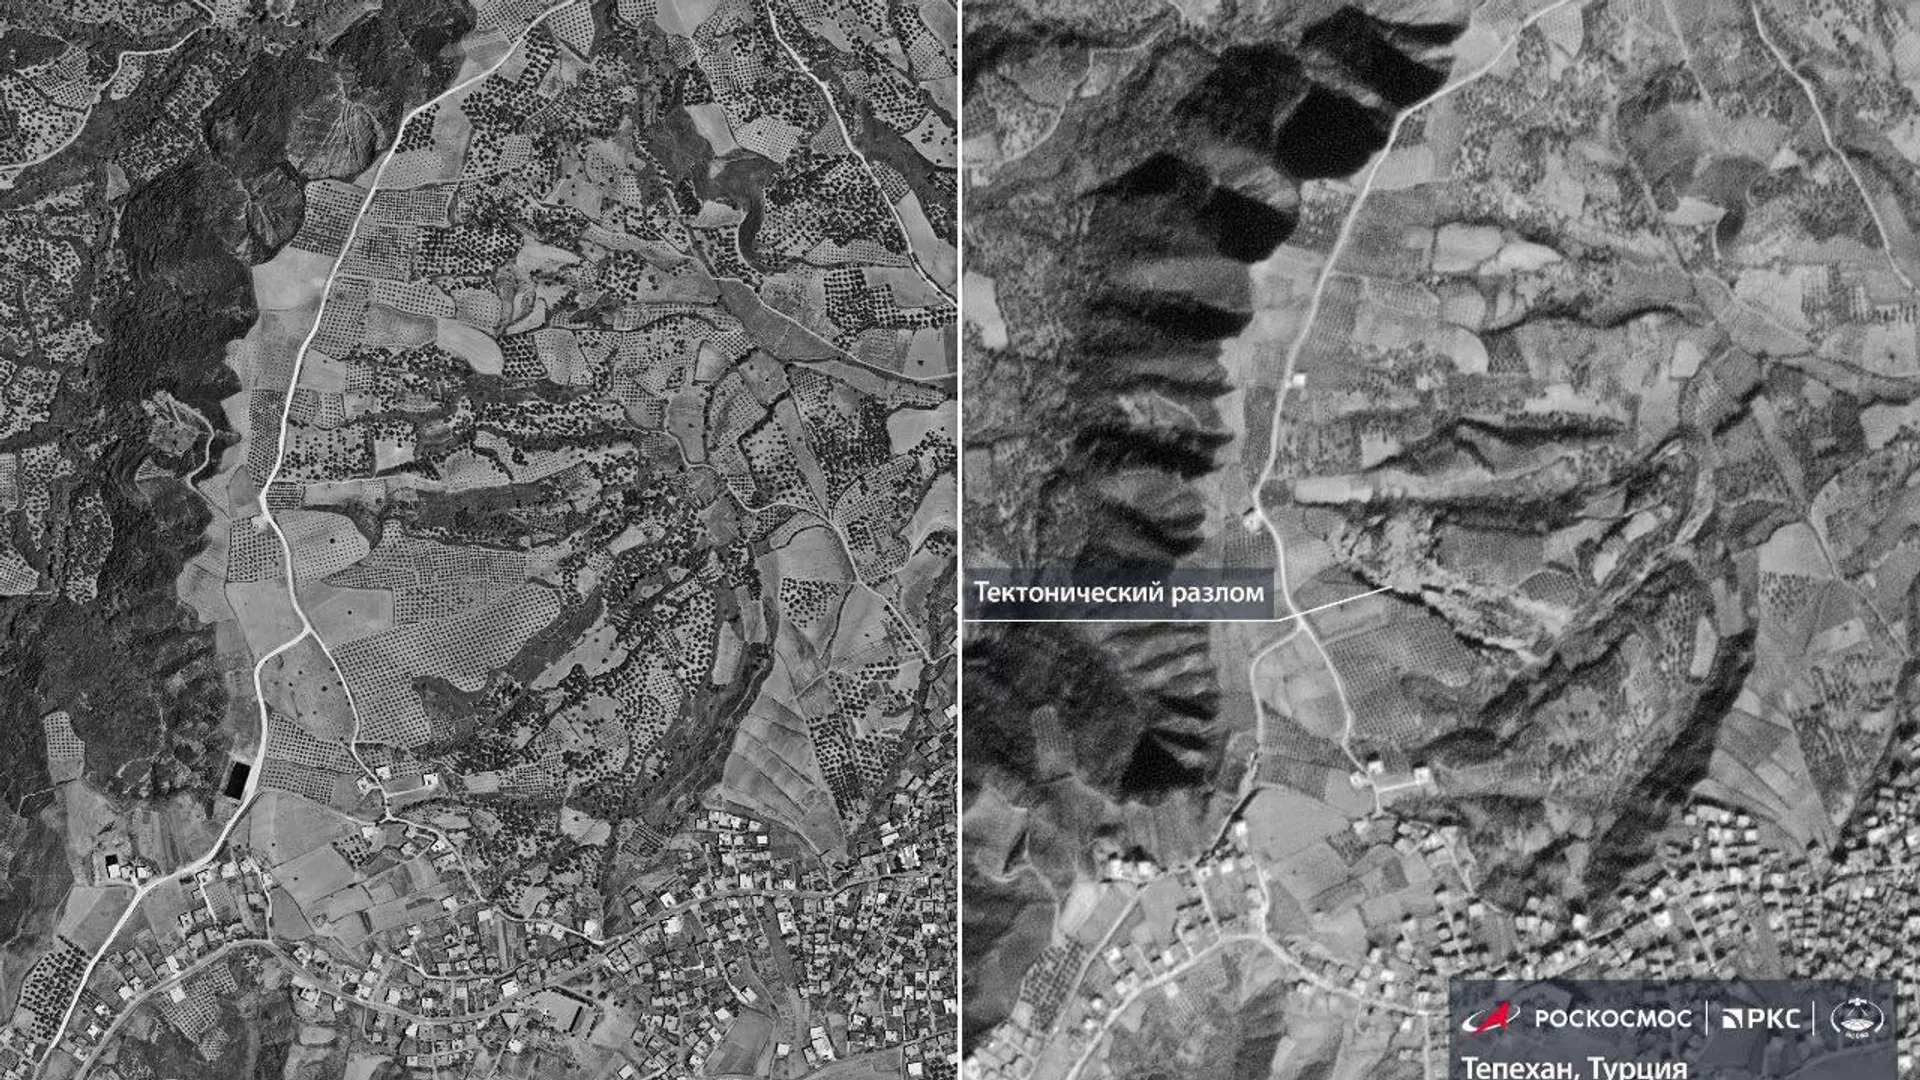  Снимок тектонического разлома после землетрясения на юго-востоке Турции, опубликованный Роскосмосом - РИА Новости, 1920, 12.02.2023